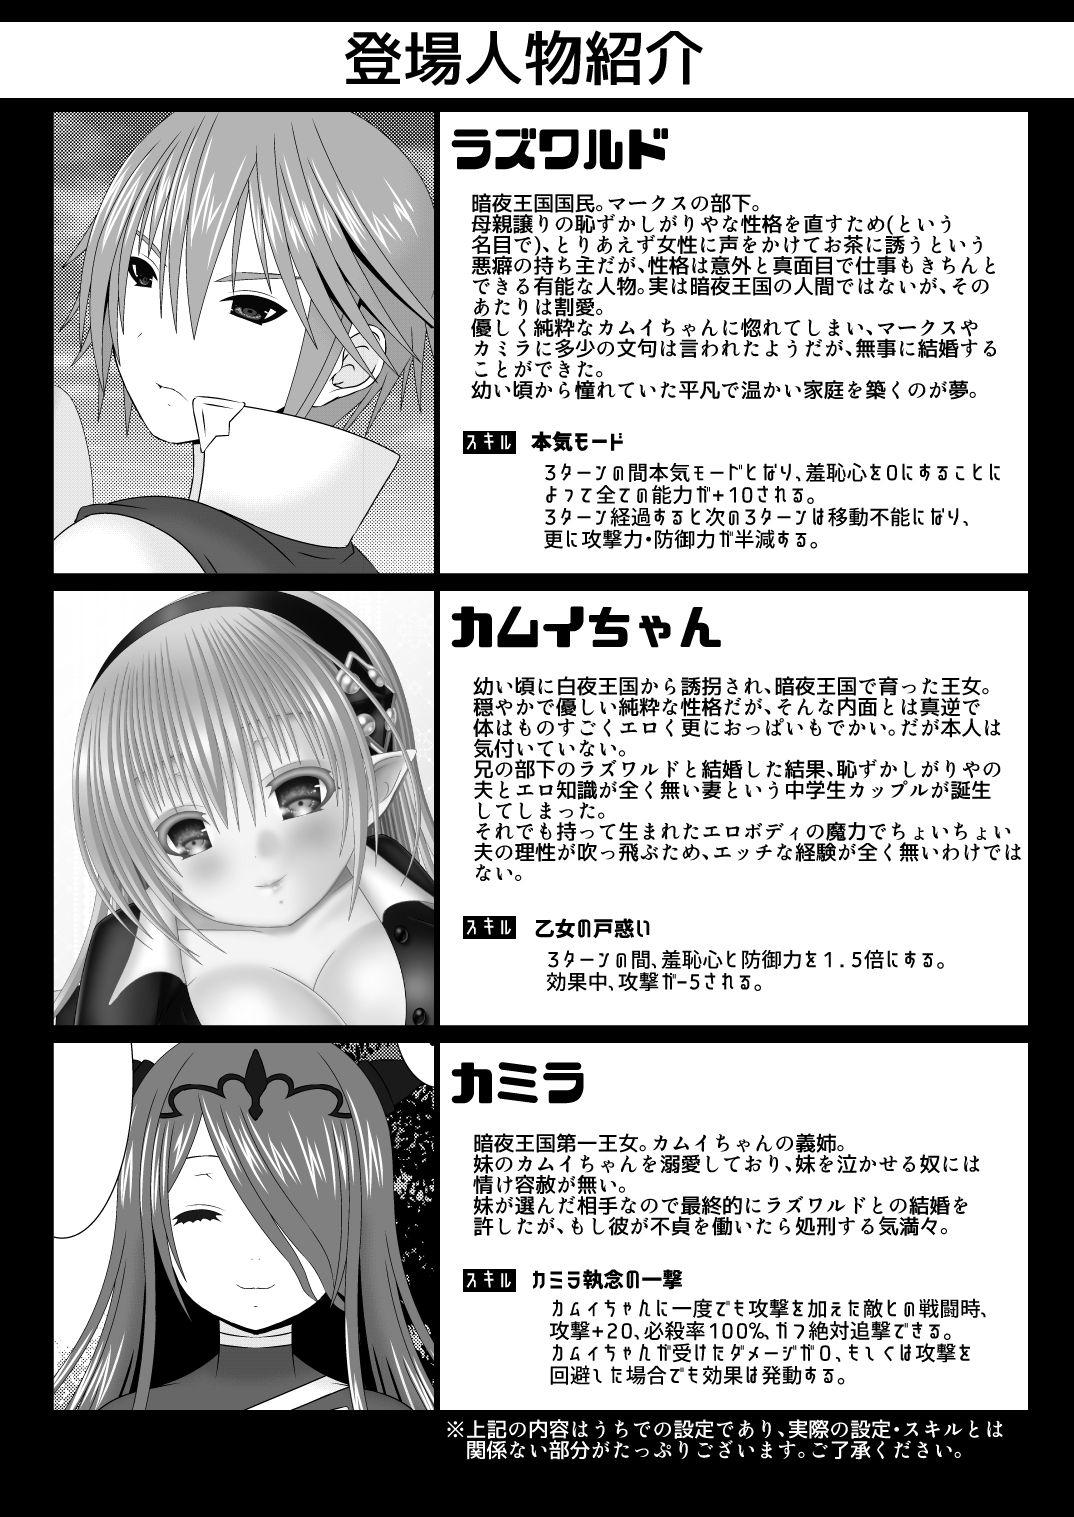 Chicks Hazukashigariya no Futari - Fire emblem if Girlfriends - Page 2